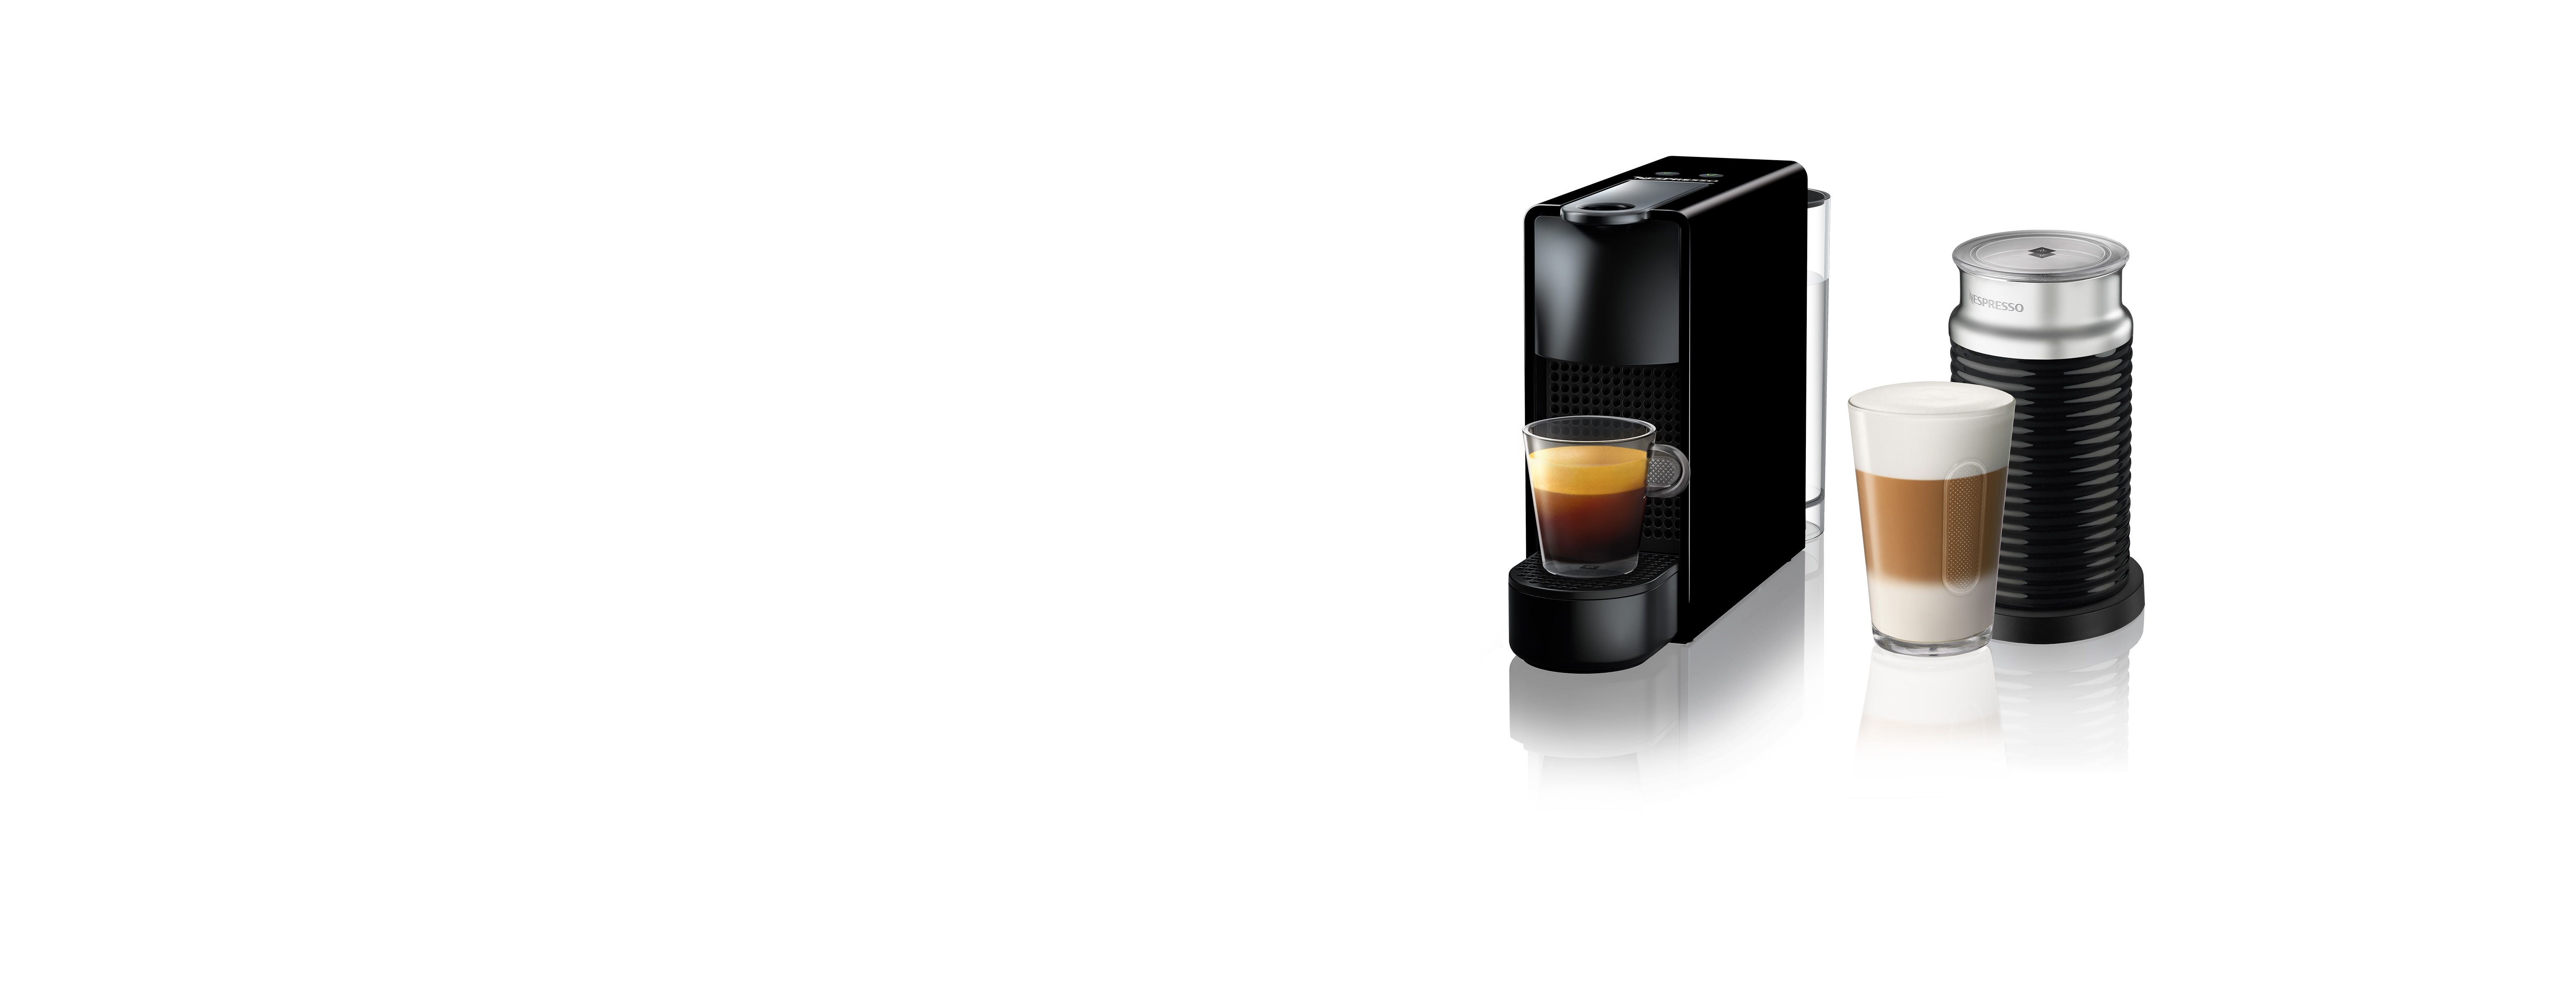 Essenza Mini C30 Black  Aeroccino 3 | Nespresso™ Romania